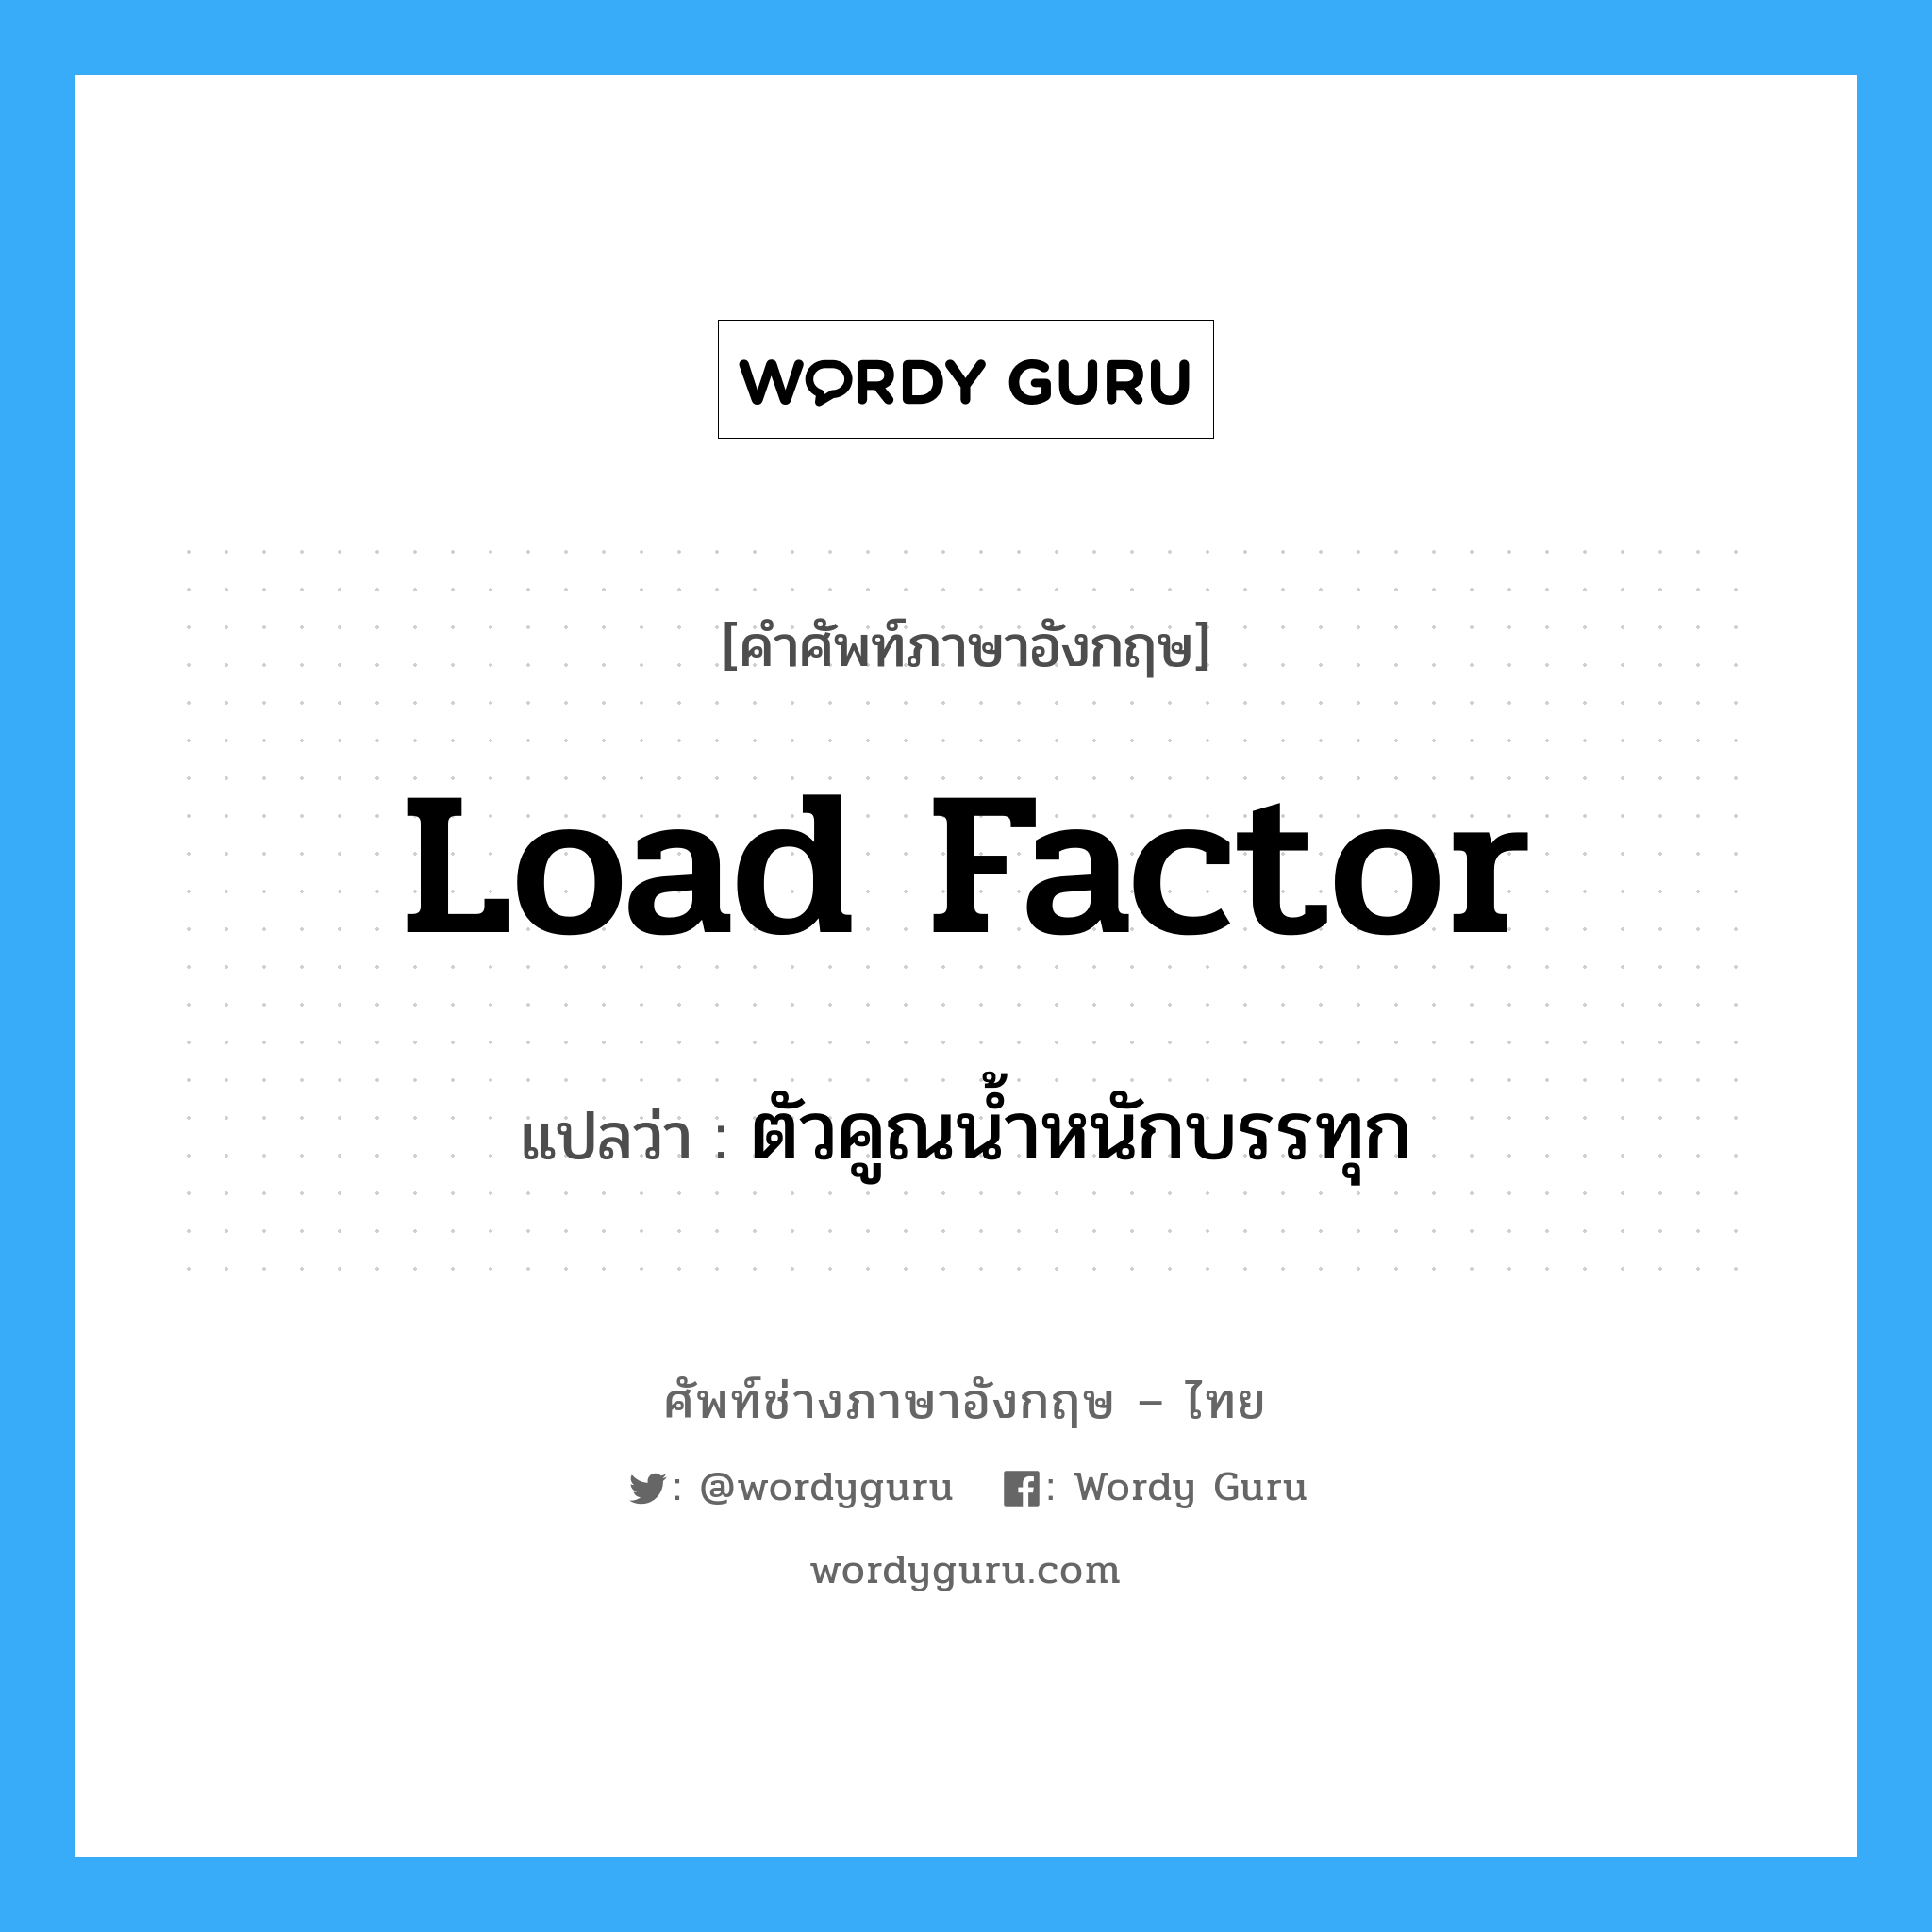 load factor แปลว่า?, คำศัพท์ช่างภาษาอังกฤษ - ไทย load factor คำศัพท์ภาษาอังกฤษ load factor แปลว่า ตัวคูณน้ำหนักบรรทุก